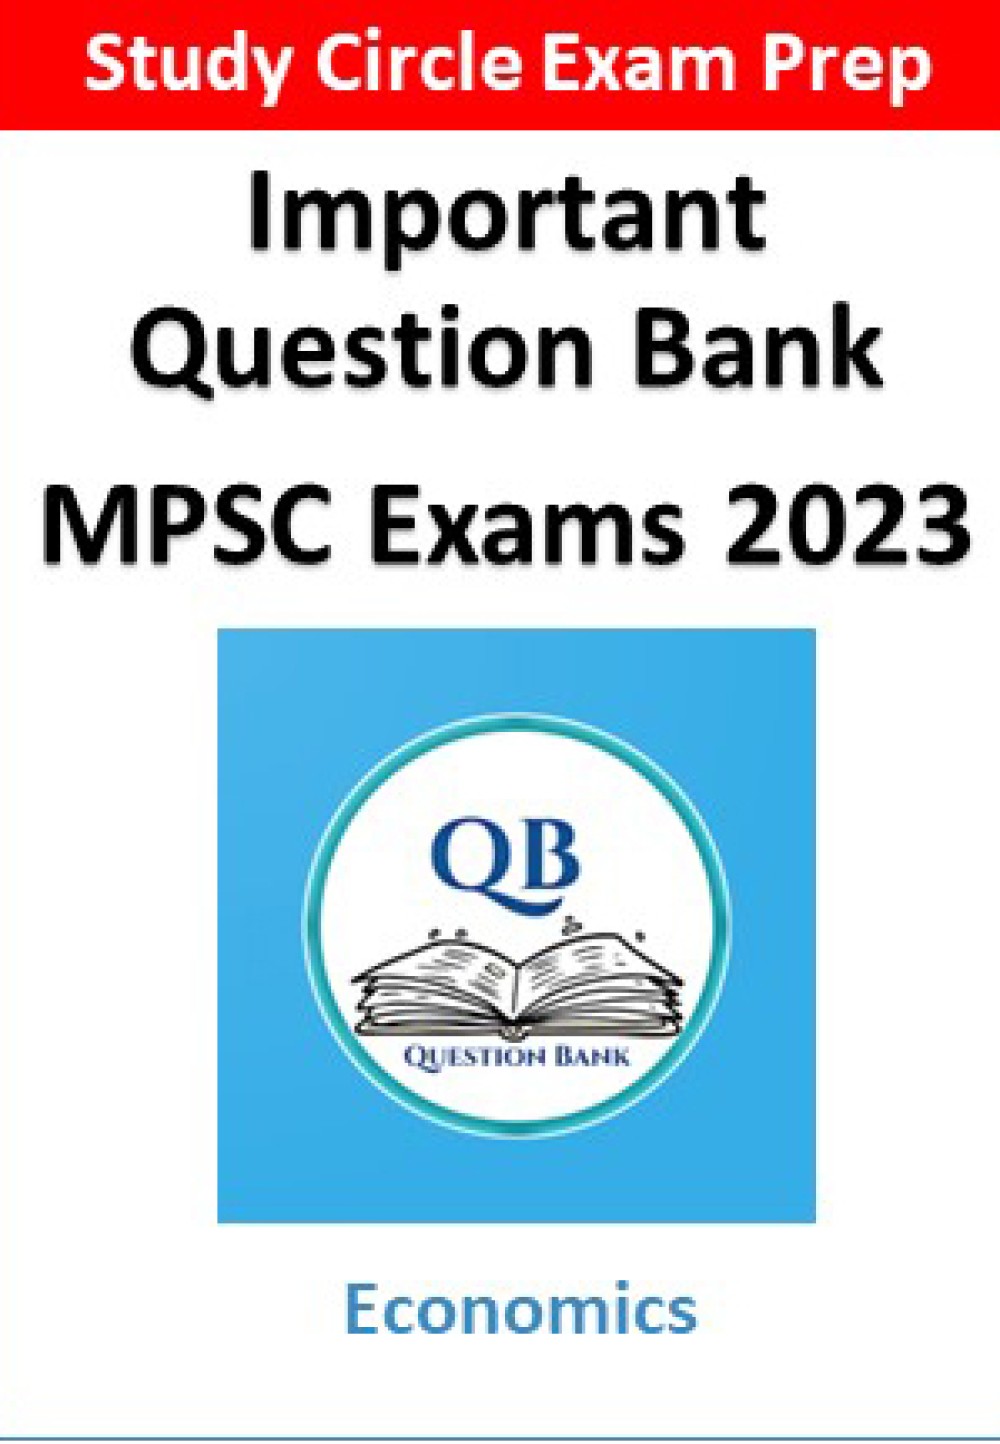 2023 च्या विविध MPSC परीक्षांमध्ये अर्थशास्त्र या विषयावरील प्रश्न